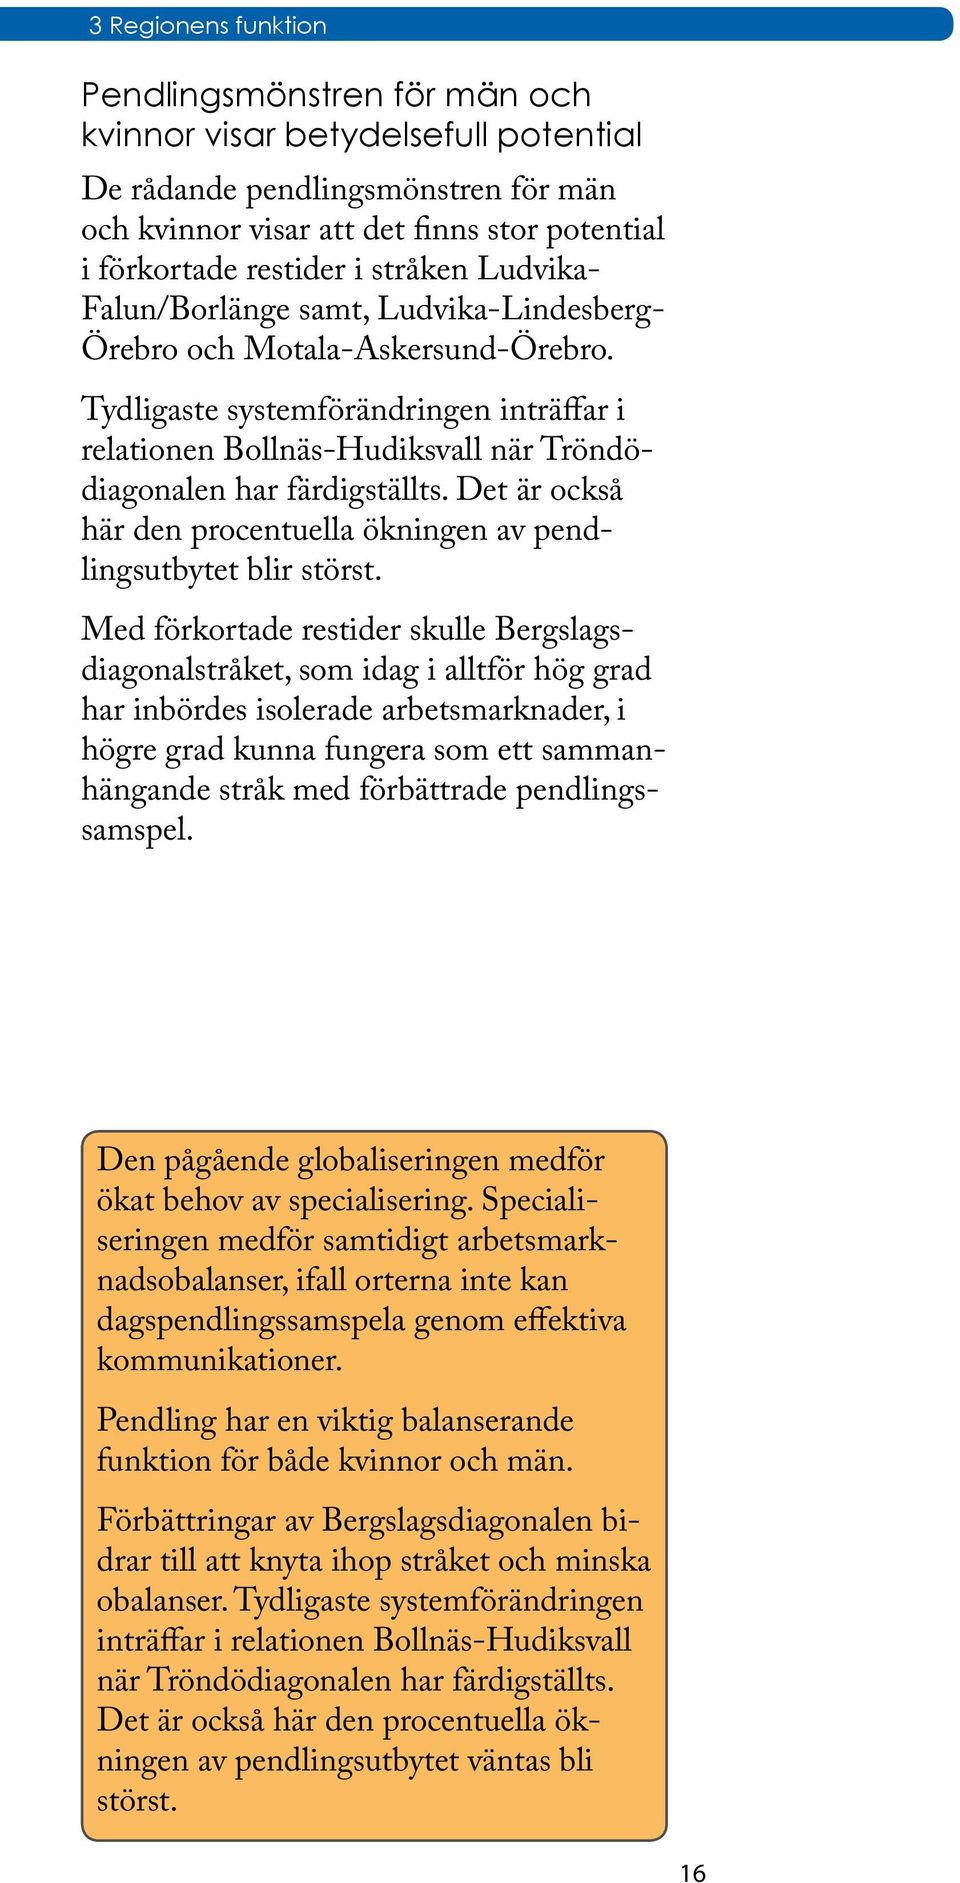 Tydligaste systemförändringen inträffar i relationen Bollnäs-Hudiksvall när Tröndödiagonalen har färdigställts. Det är också här den procentuella ökningen av pendlingsutbytet blir störst.